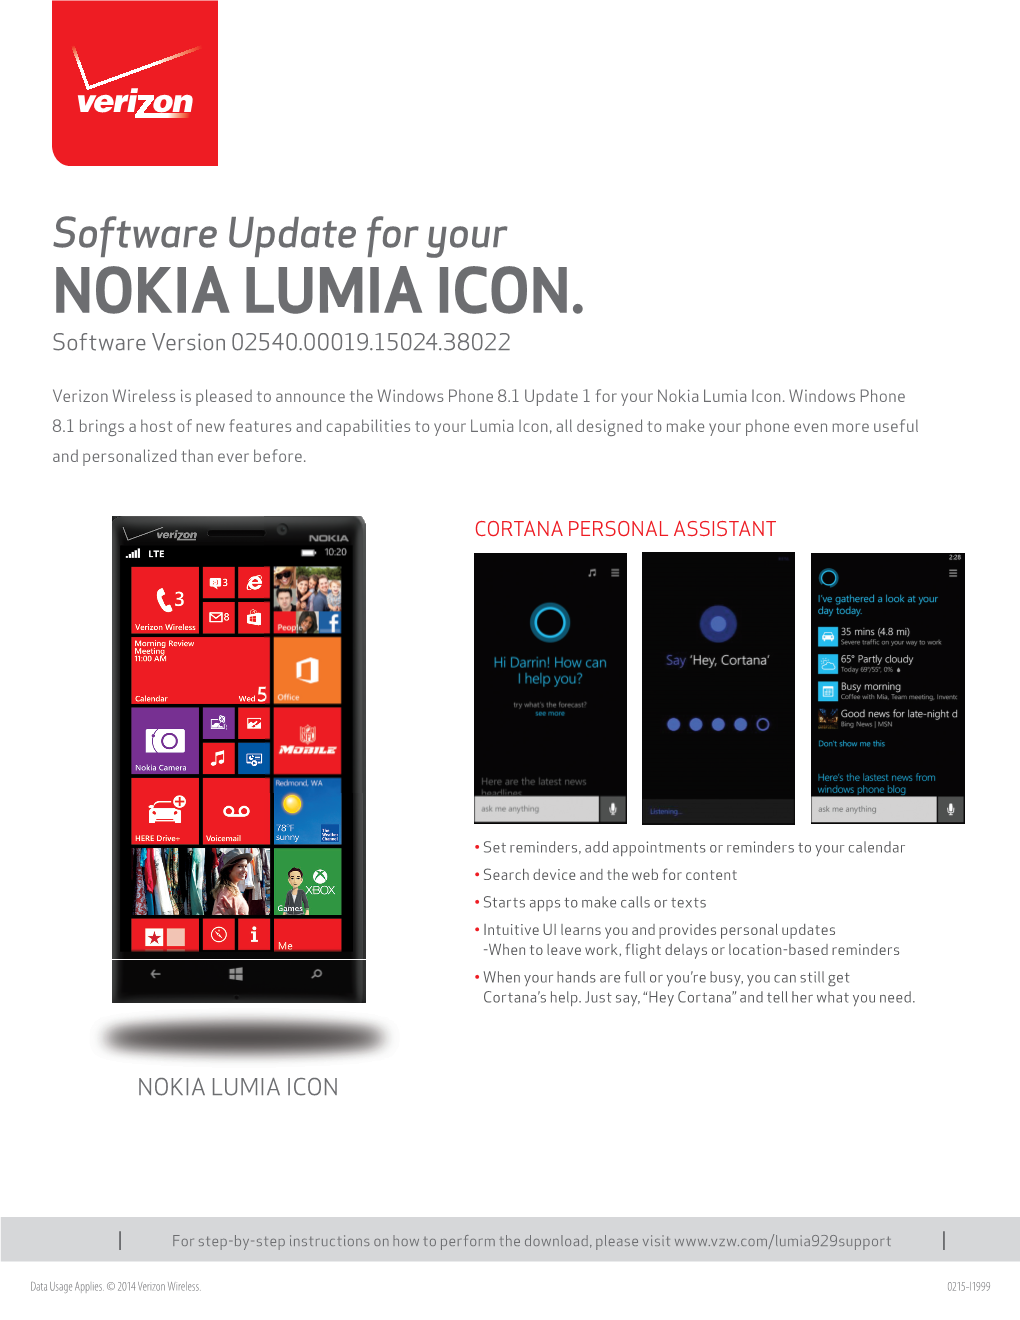 BPOD-I1999-Nokia Lumia Icon-V5.Indd